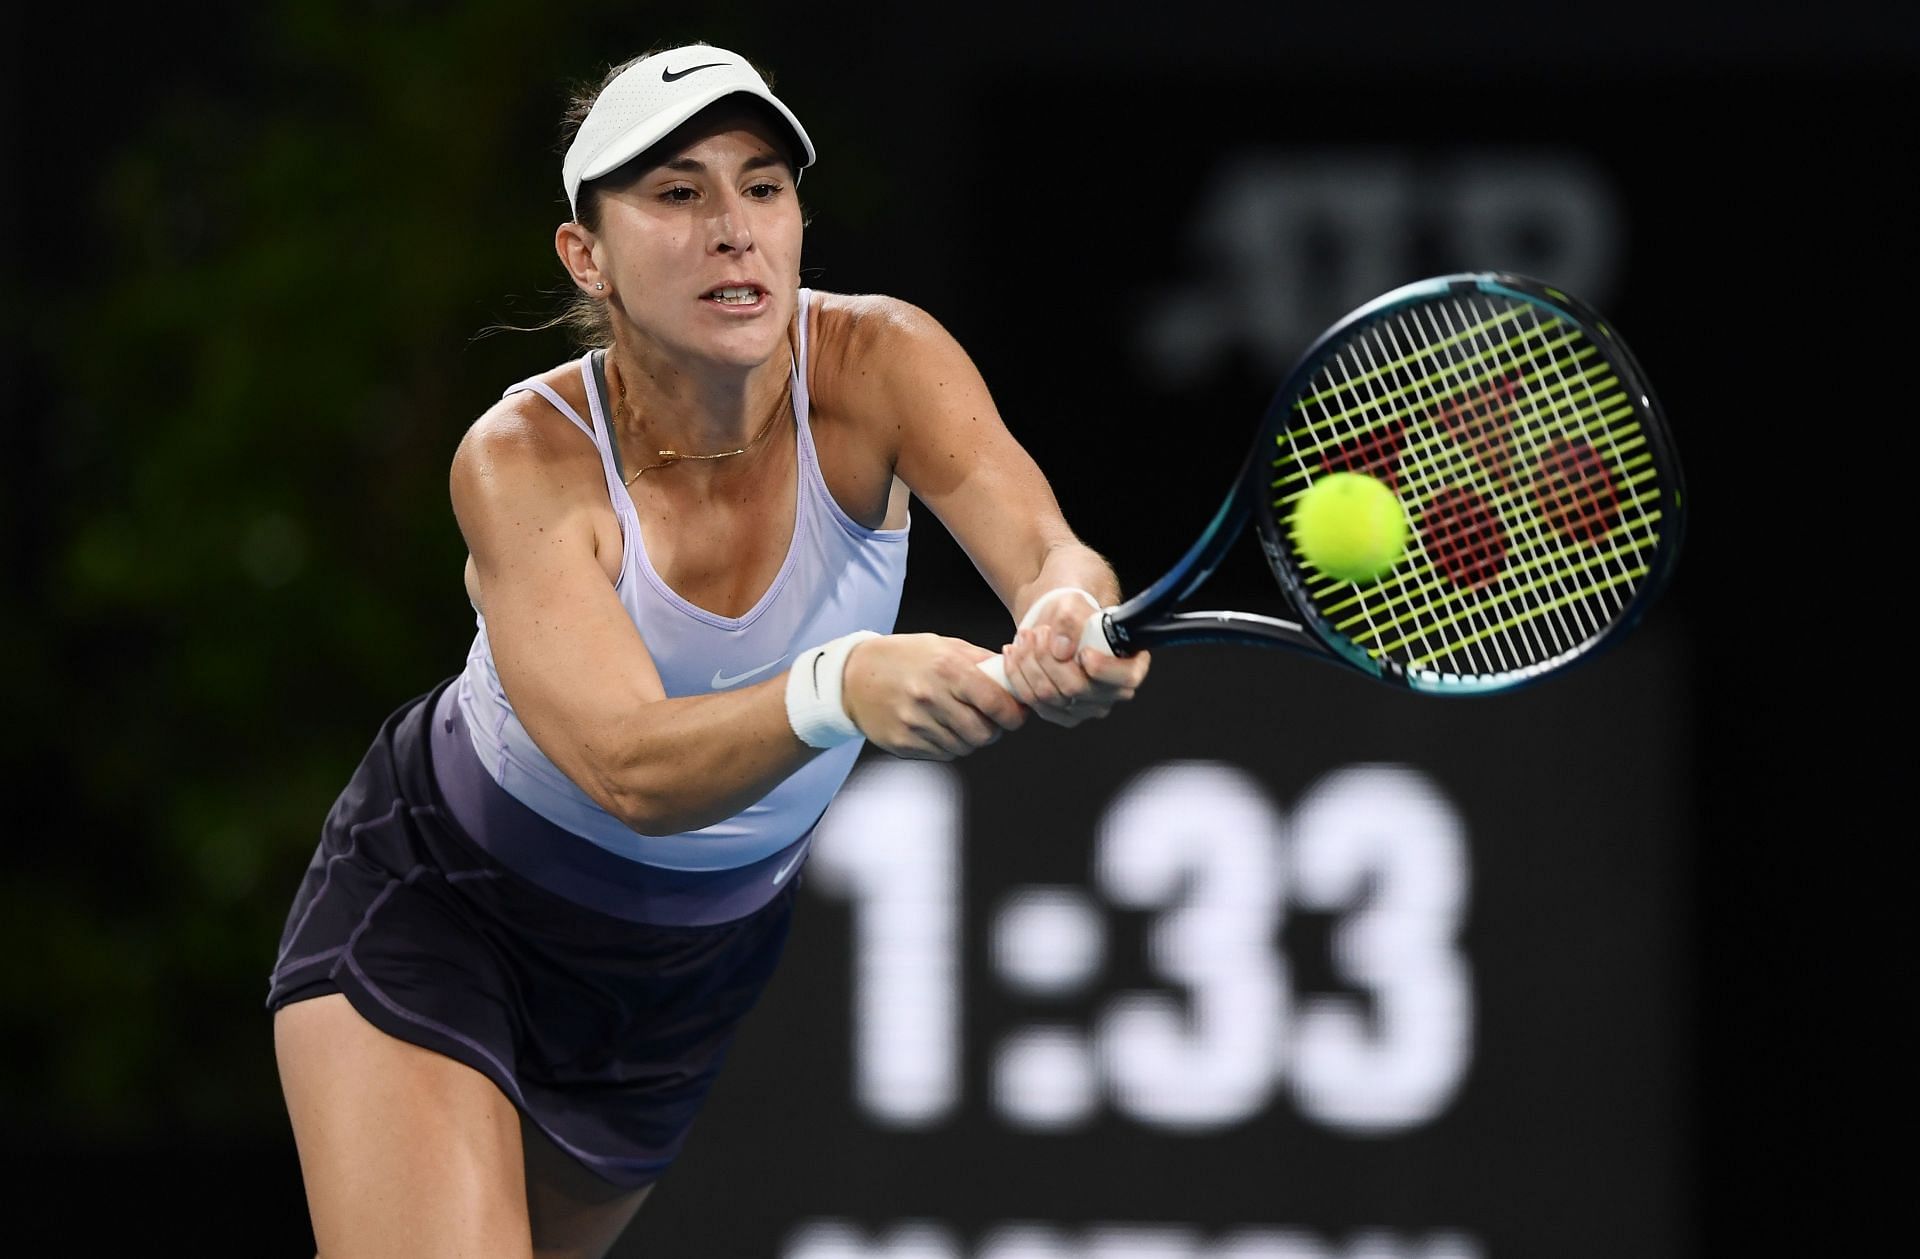 Australian Open 2023 Belinda Bencic vs Viktoriya Tomova preview, head-to-head, prediction, odds and pick